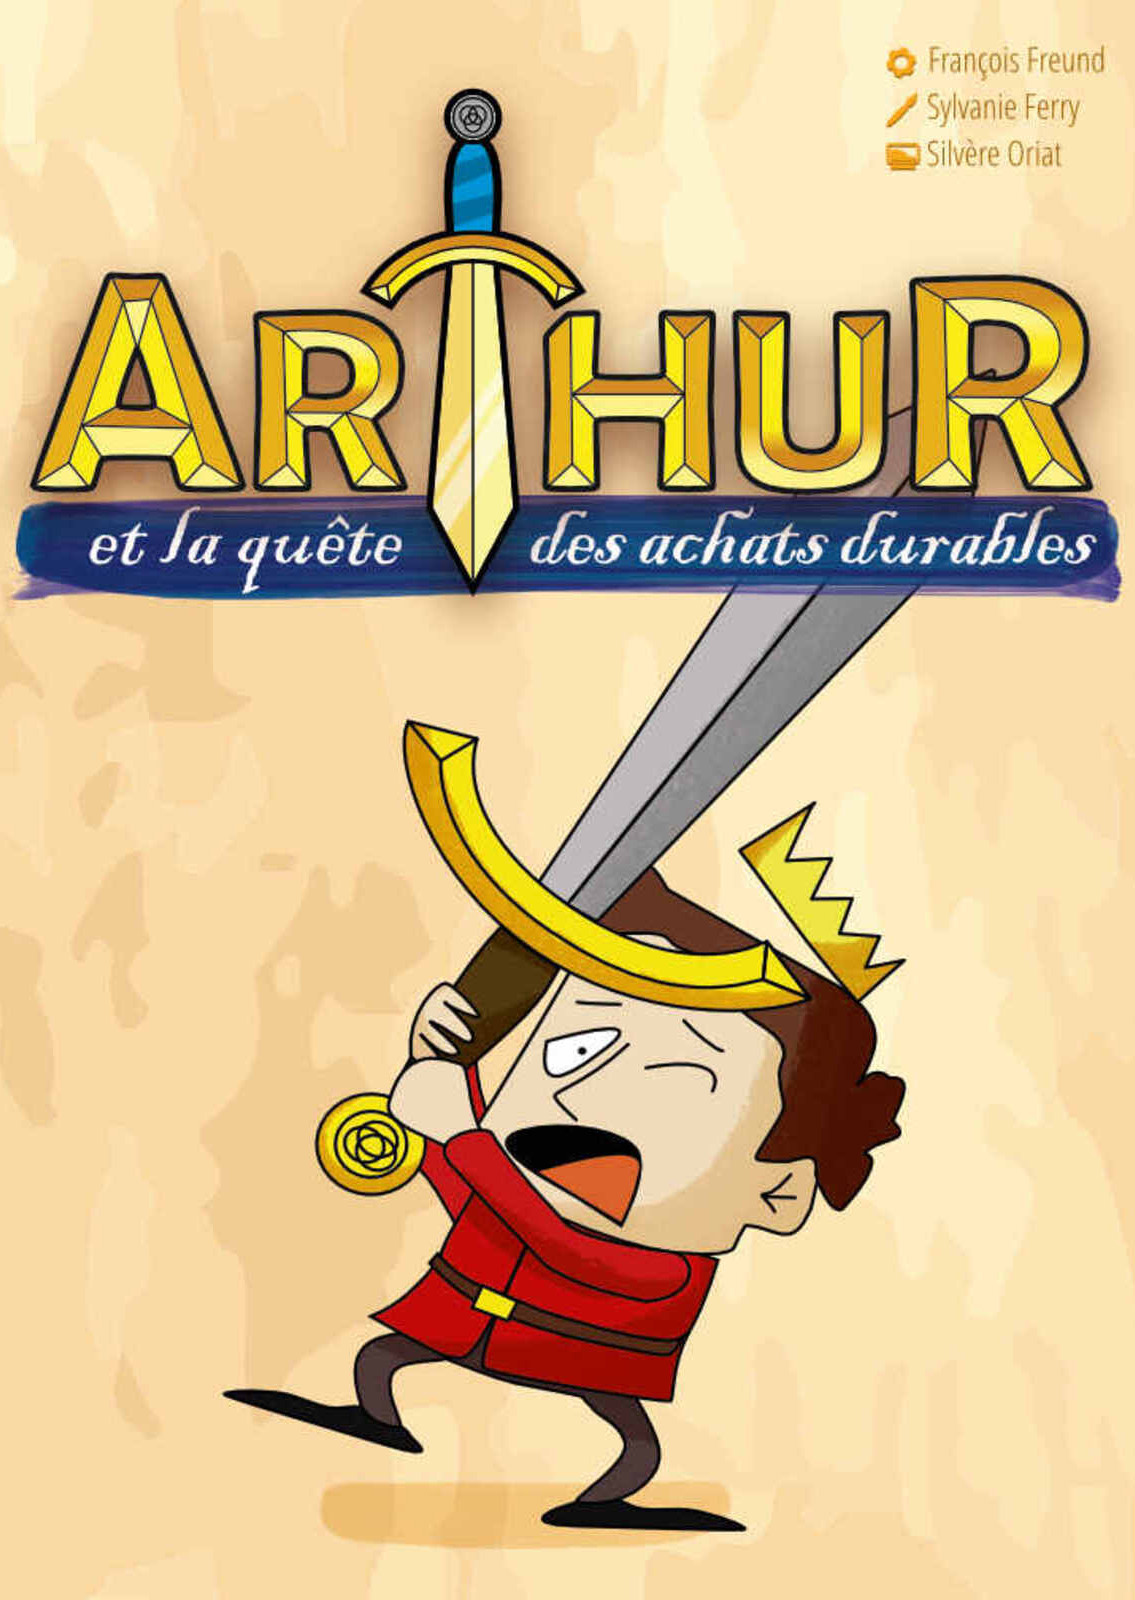 Serious Game Arthur et la quête des achats durables